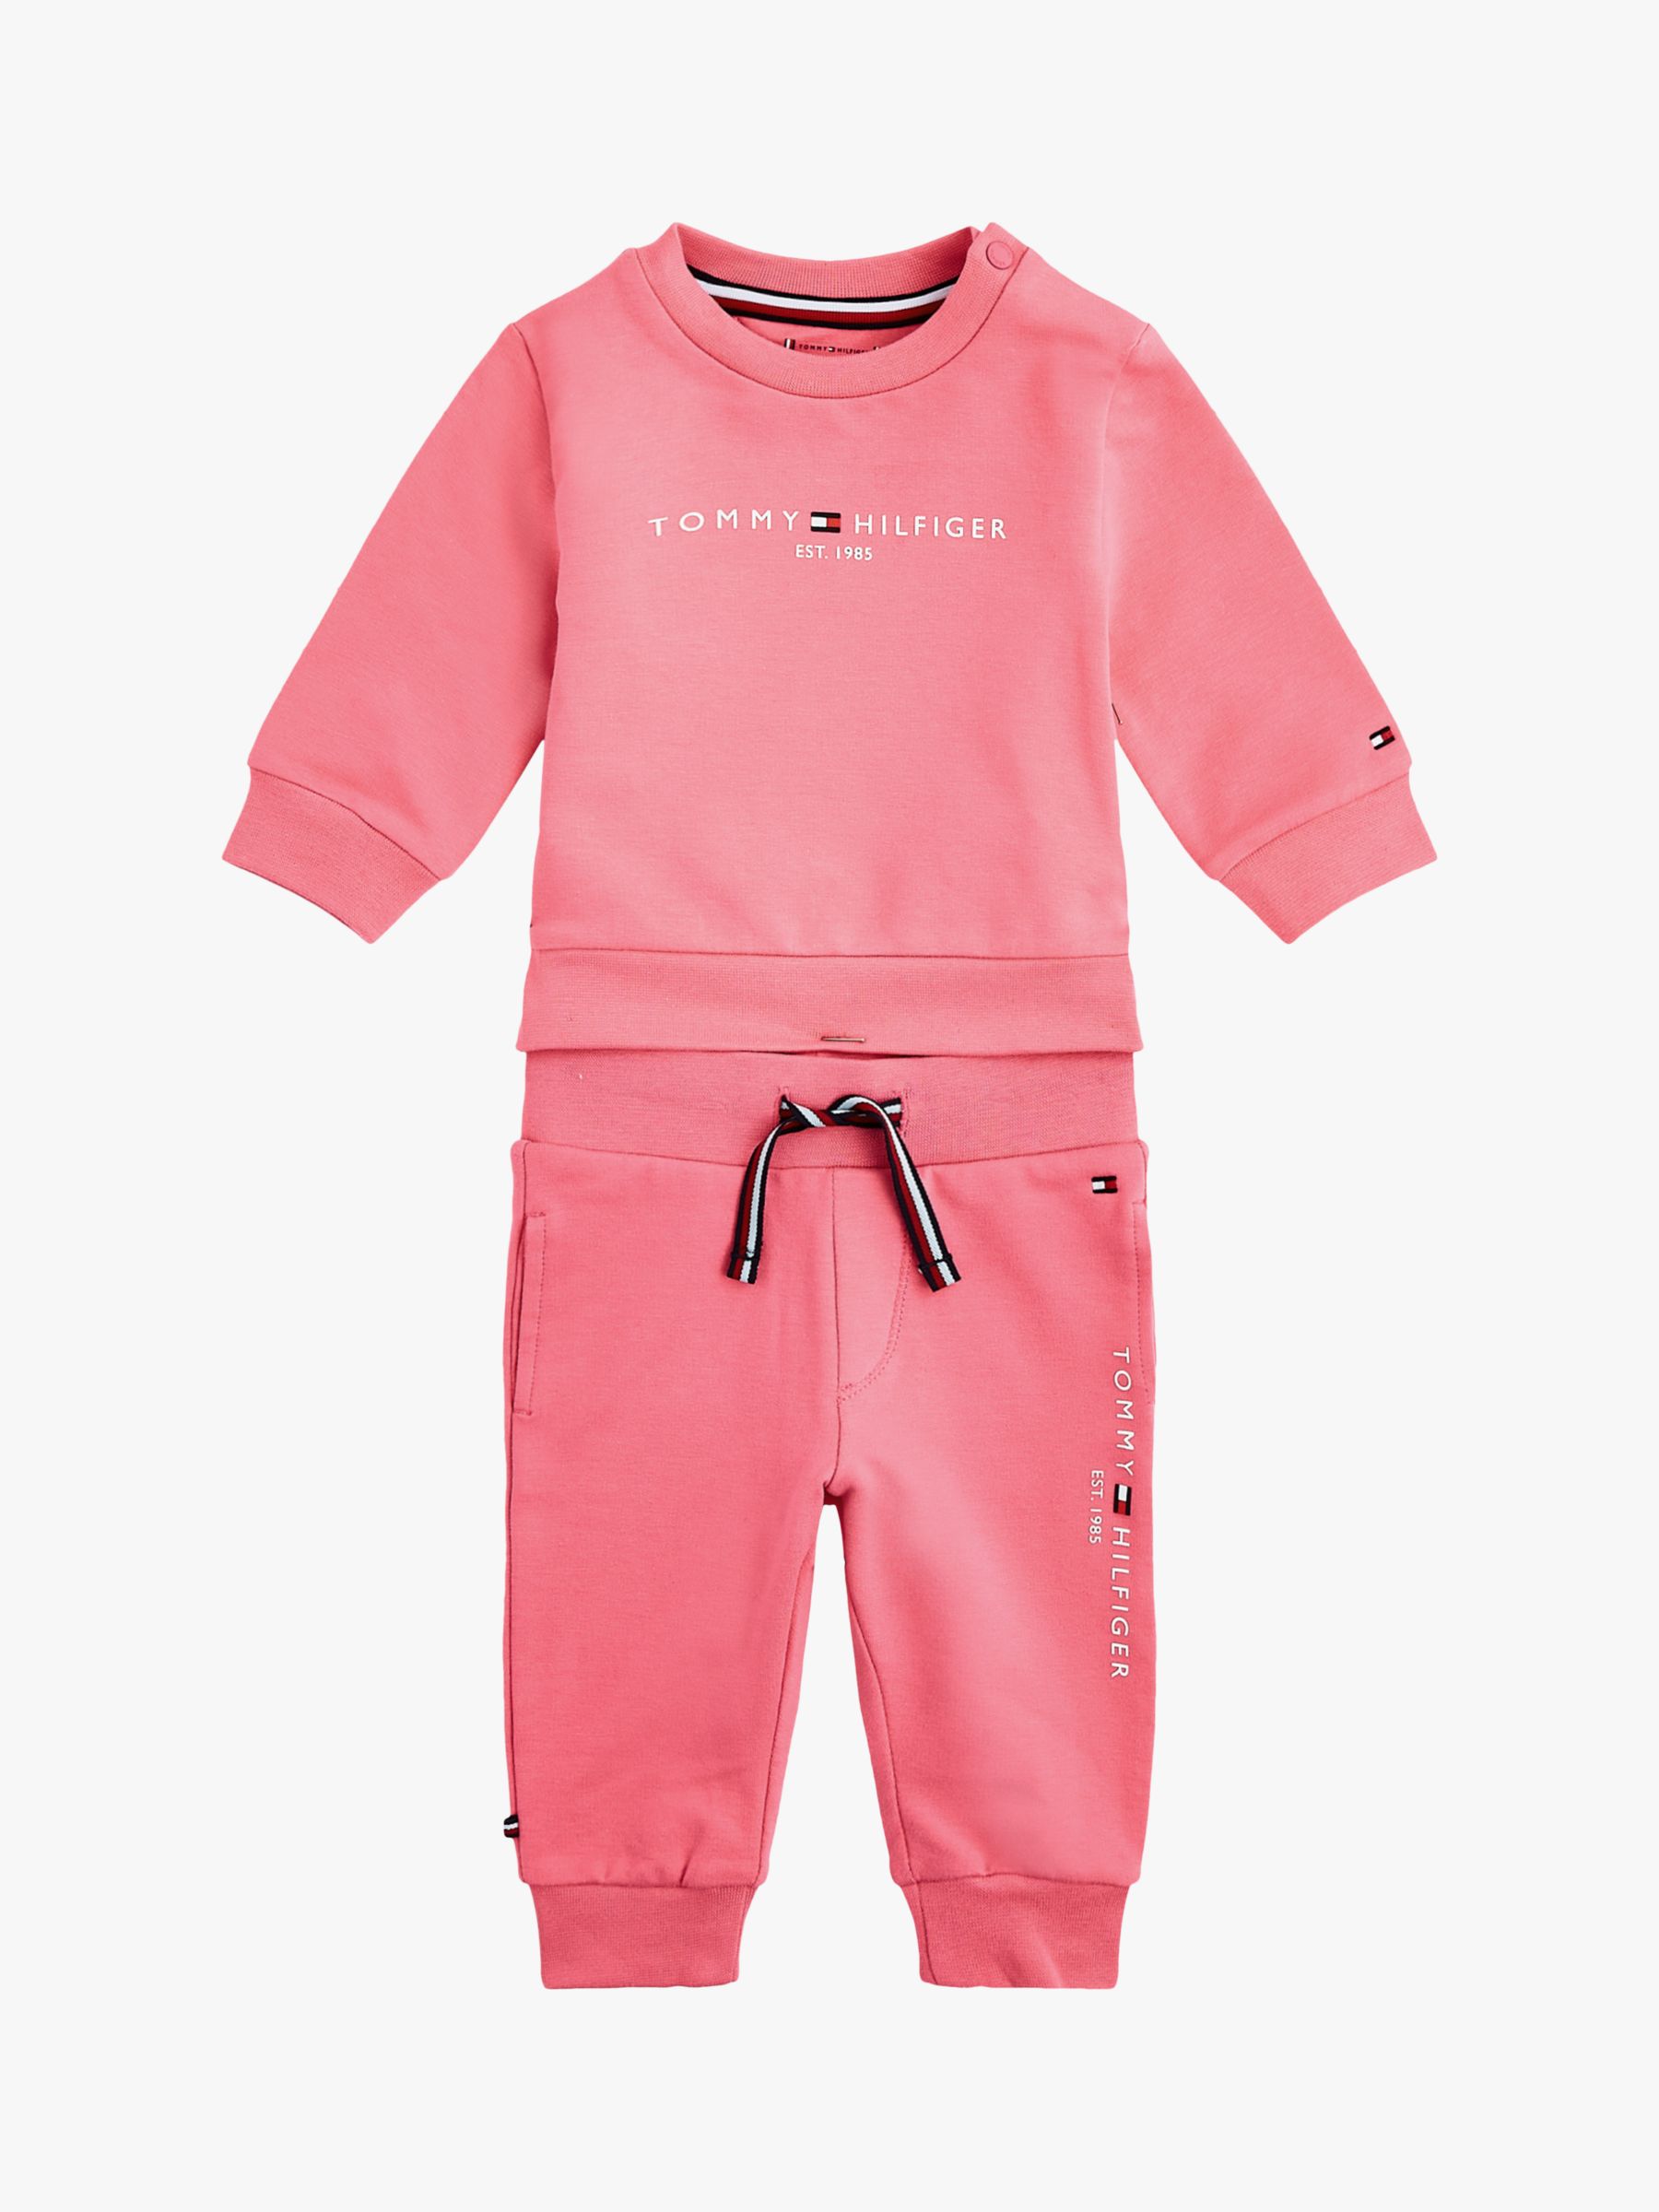 Tommy Hilfiger Baby Essential Logo Crew Sweatshirt and Set, Pink, 0-3 months